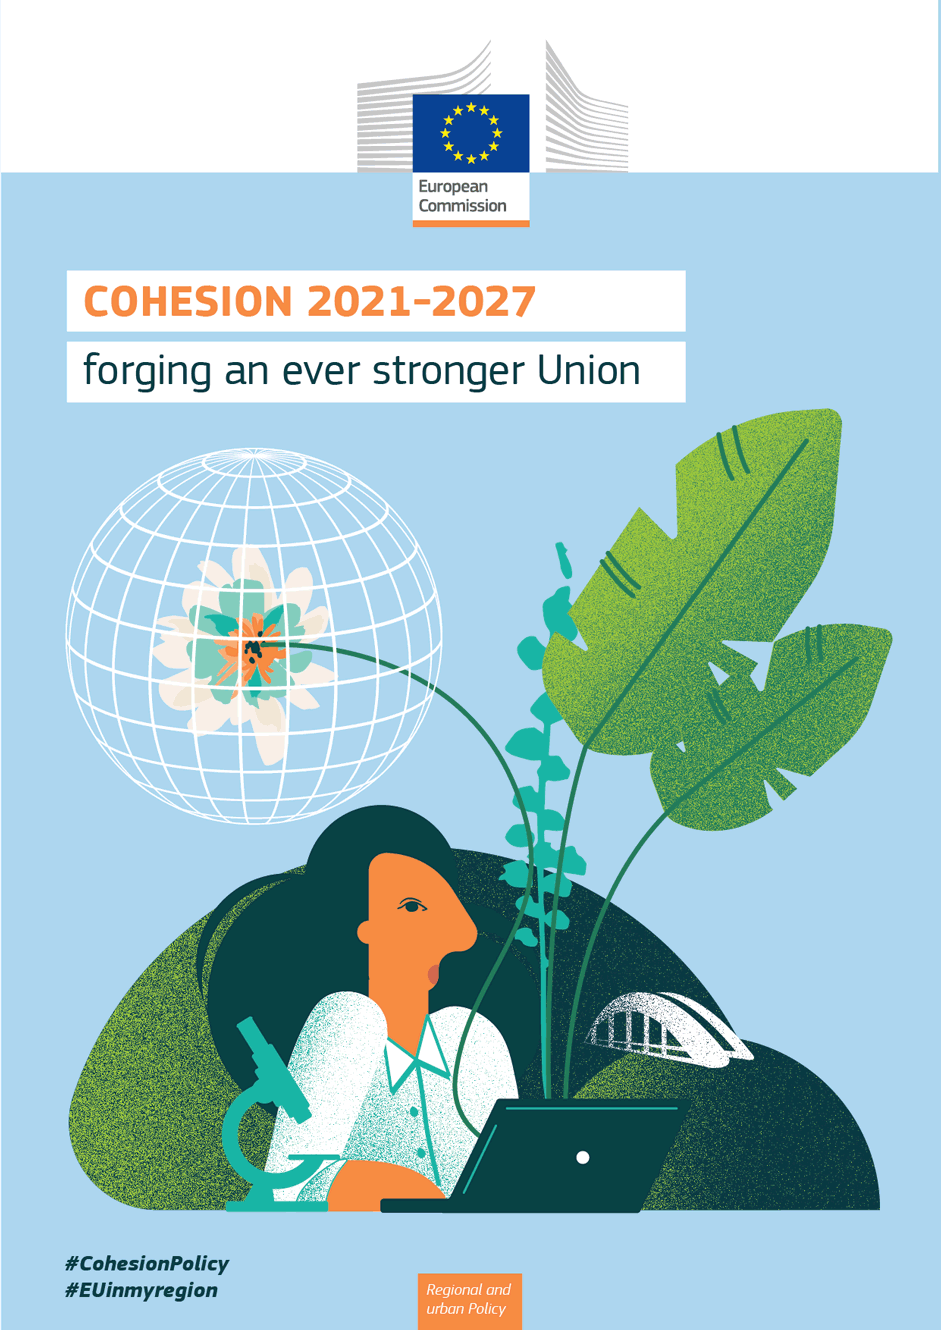 Politique de cohésion de l'Union européenne: les programmes pour la période 2021-2027 devraient permettre de créer 1,3 million d'emplois dans l'UE